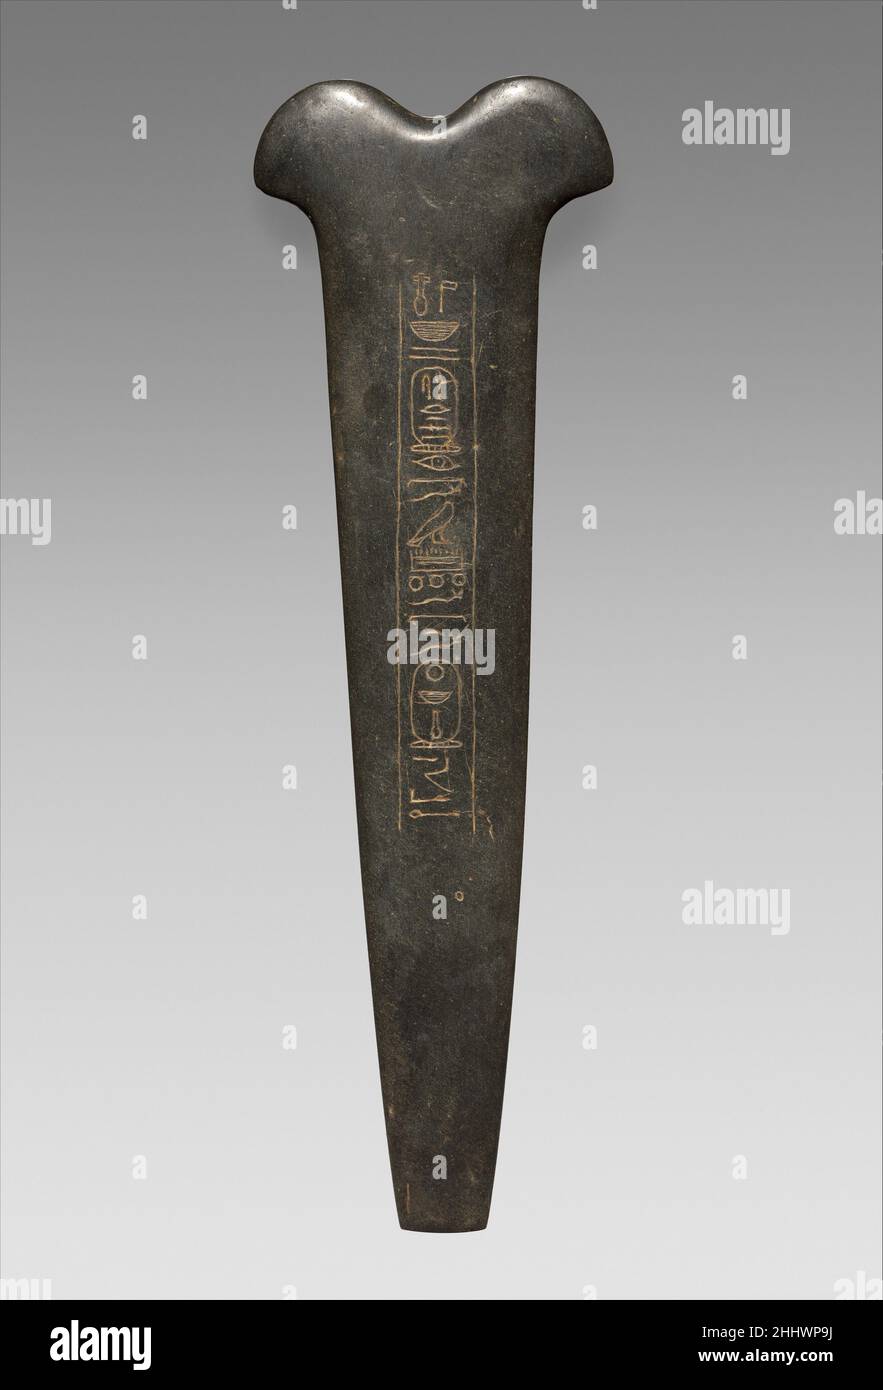 Mise en œuvre rituelle dédiée par un roi Senwosret à Nebhepète Mentuhotep II ca.1961–1840 C.-B. Royaume du milieu connu sous le nom de pesesh-kef, cet instrument magique a ses origines dans la première culture égyptienne.Il peut représenter un outil utilisé pour couper le cordon ombilical.Le pesesh-kef a été employé dans le rituel d'ouverture de la bouche, au cours duquel un prêtre tirait l'instrument à la bouche d'une statue ou d'une momie culte, lui permettant de recevoir des offrandes.L'inscription indique que cet outil a été dédié à Nebhepetre Mentuhotep II par l'un des rois Senwosret, probablement Senwosret III.Imple rituel Banque D'Images